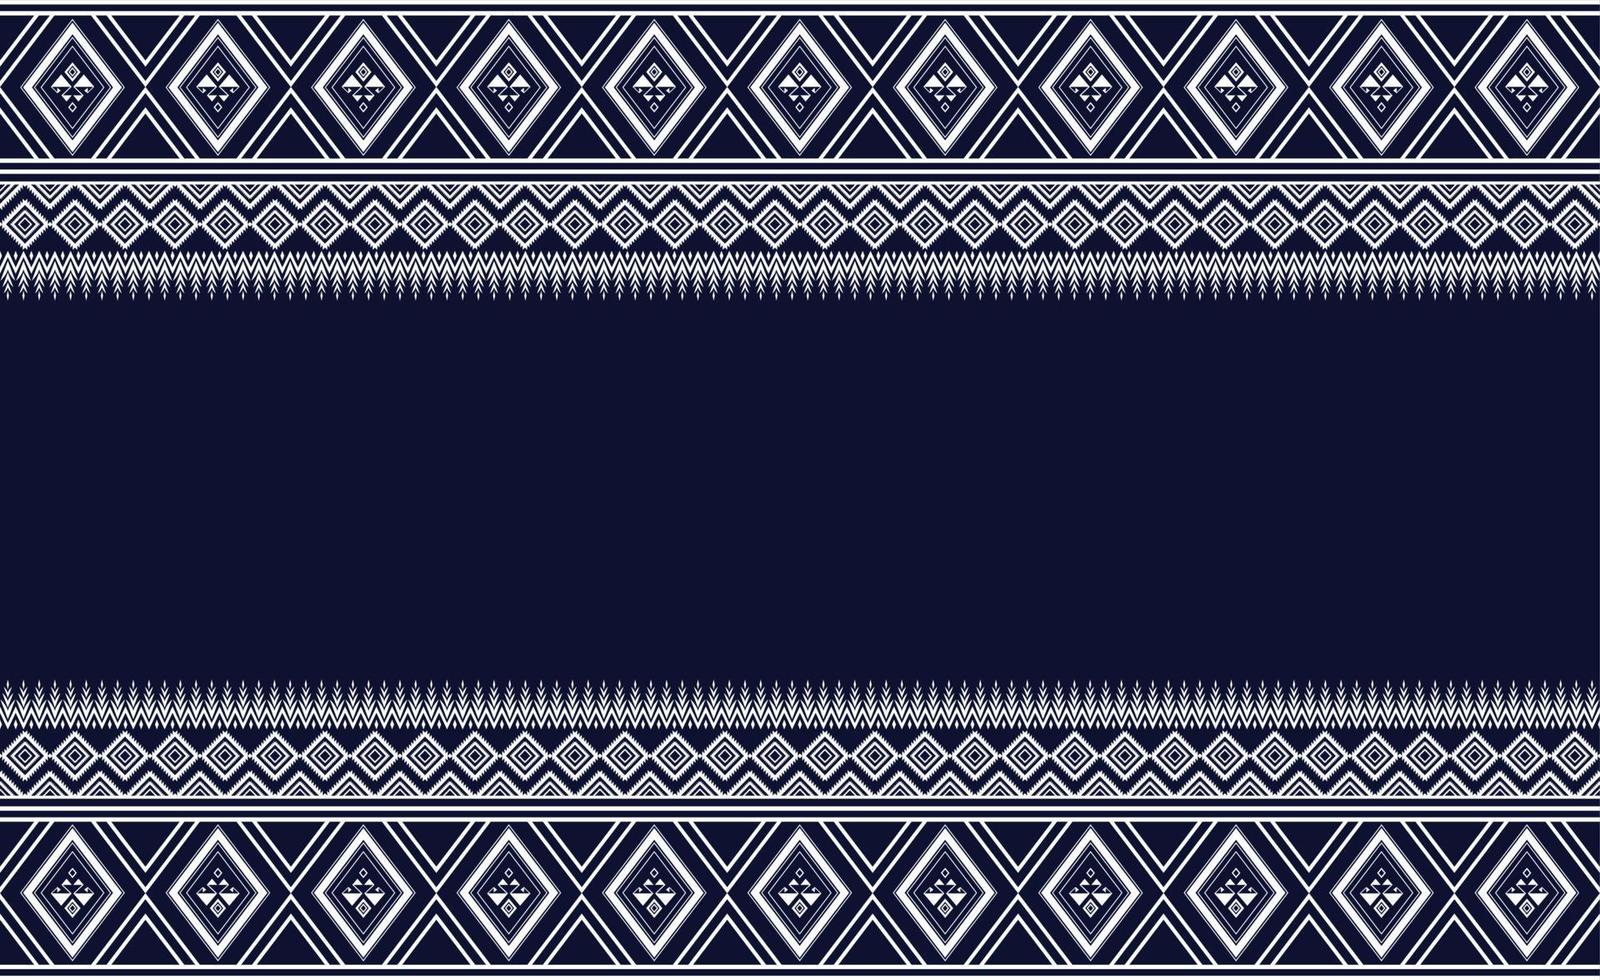 motif ethnique géométrique oriental harmonieux pour le fond ou le papier peint. conception de rideau de sol en moquette vecteur